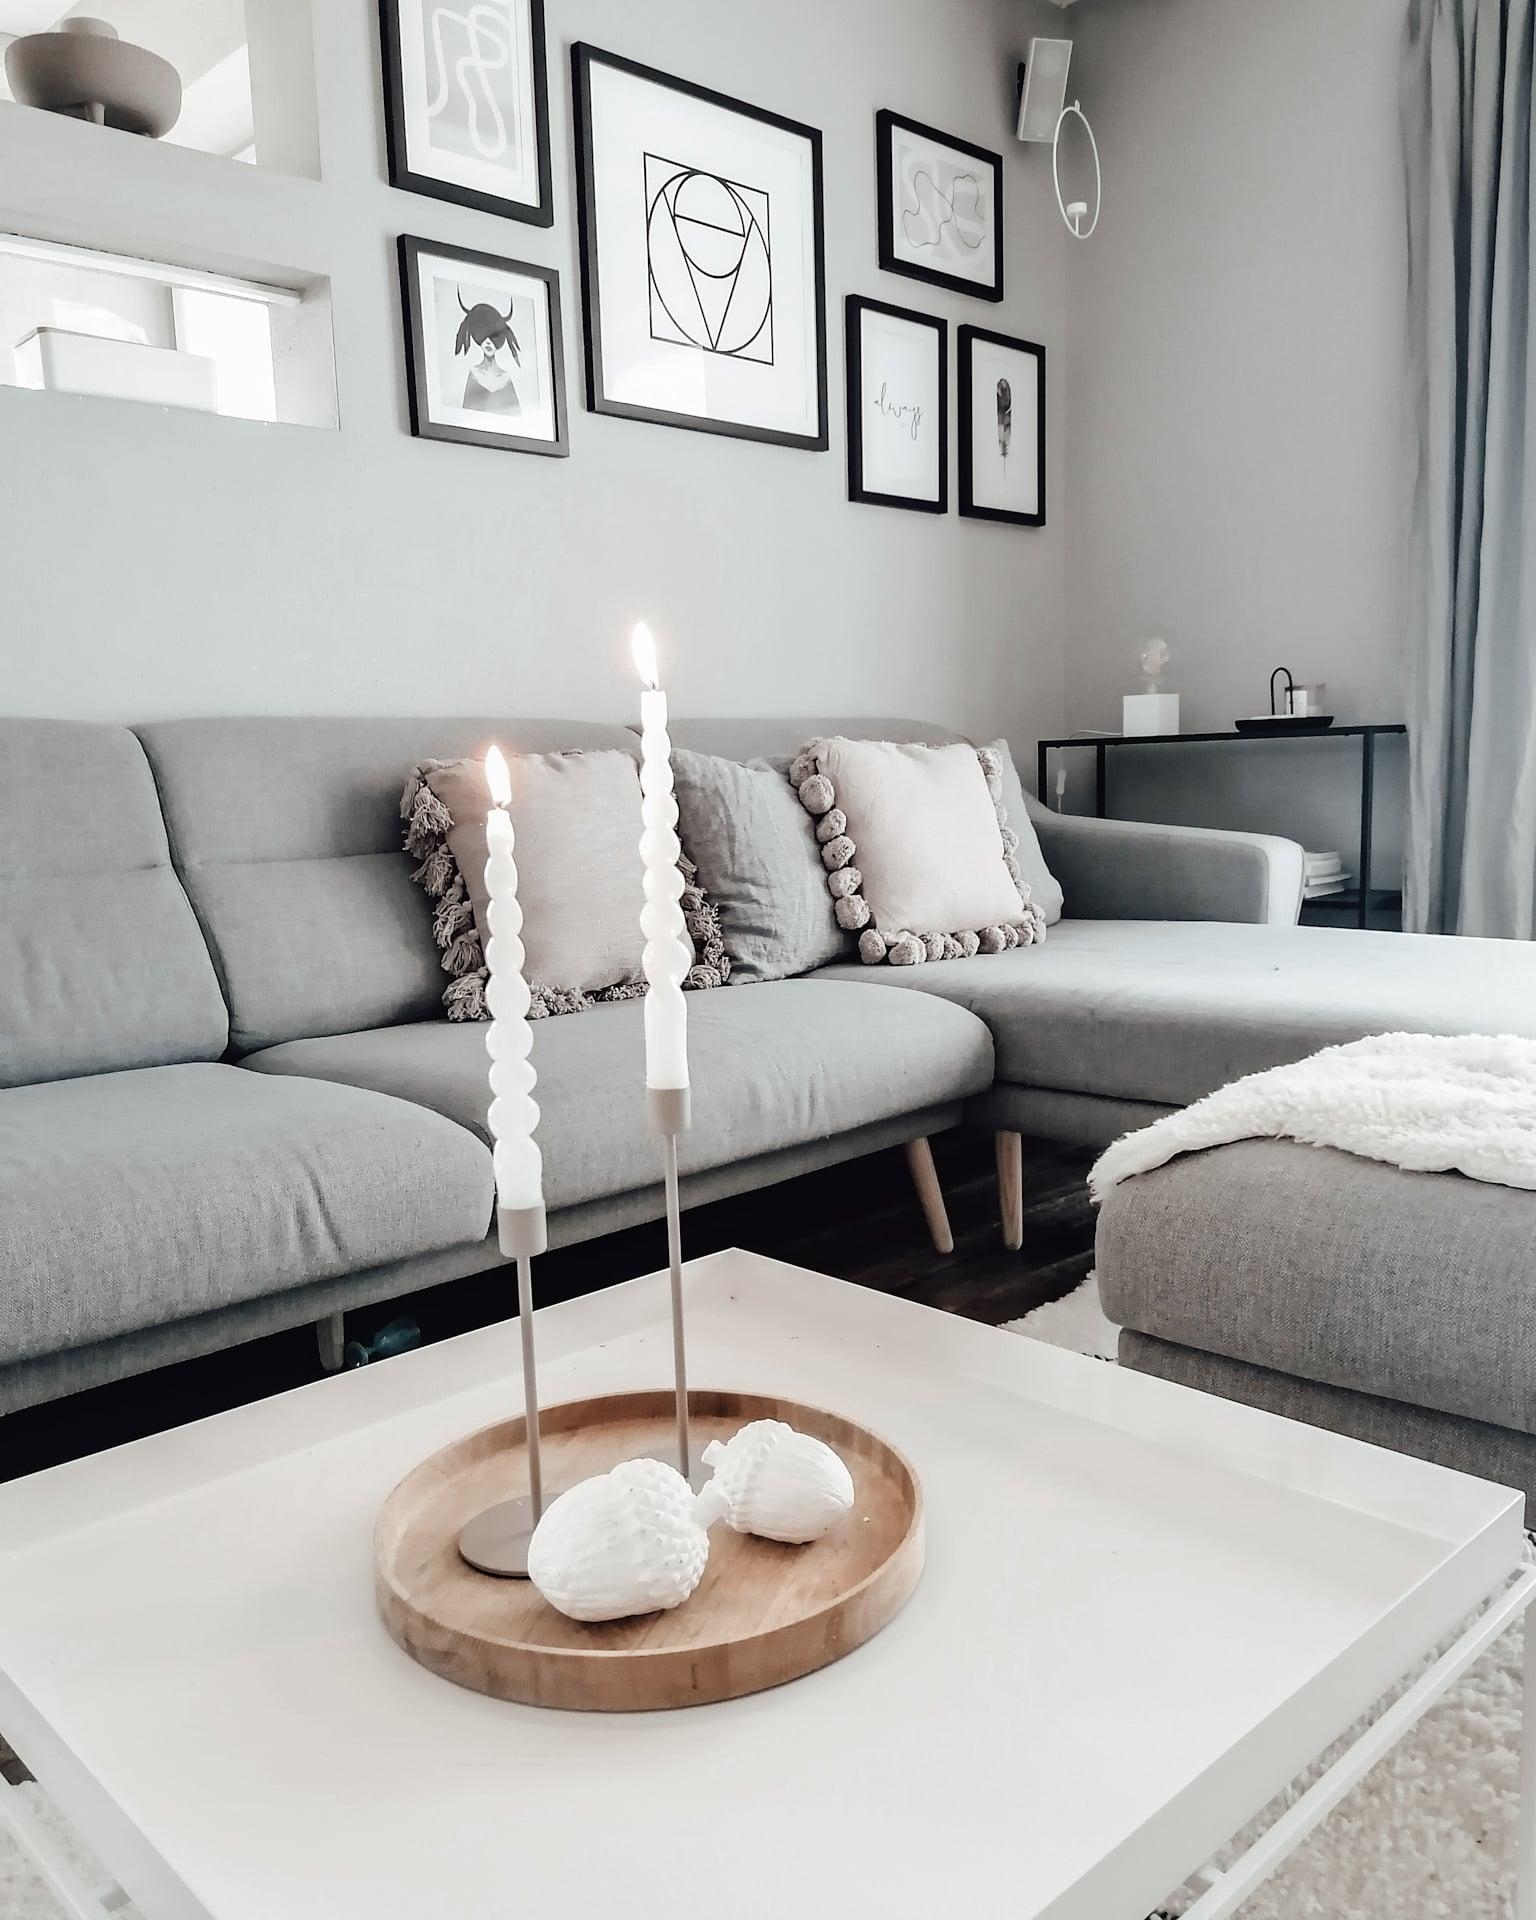 #wohnzimmer #minimalismo #minimalista #whitehome #meinhyggehome #scandilovers #scandinave #skandinavischwohnen 